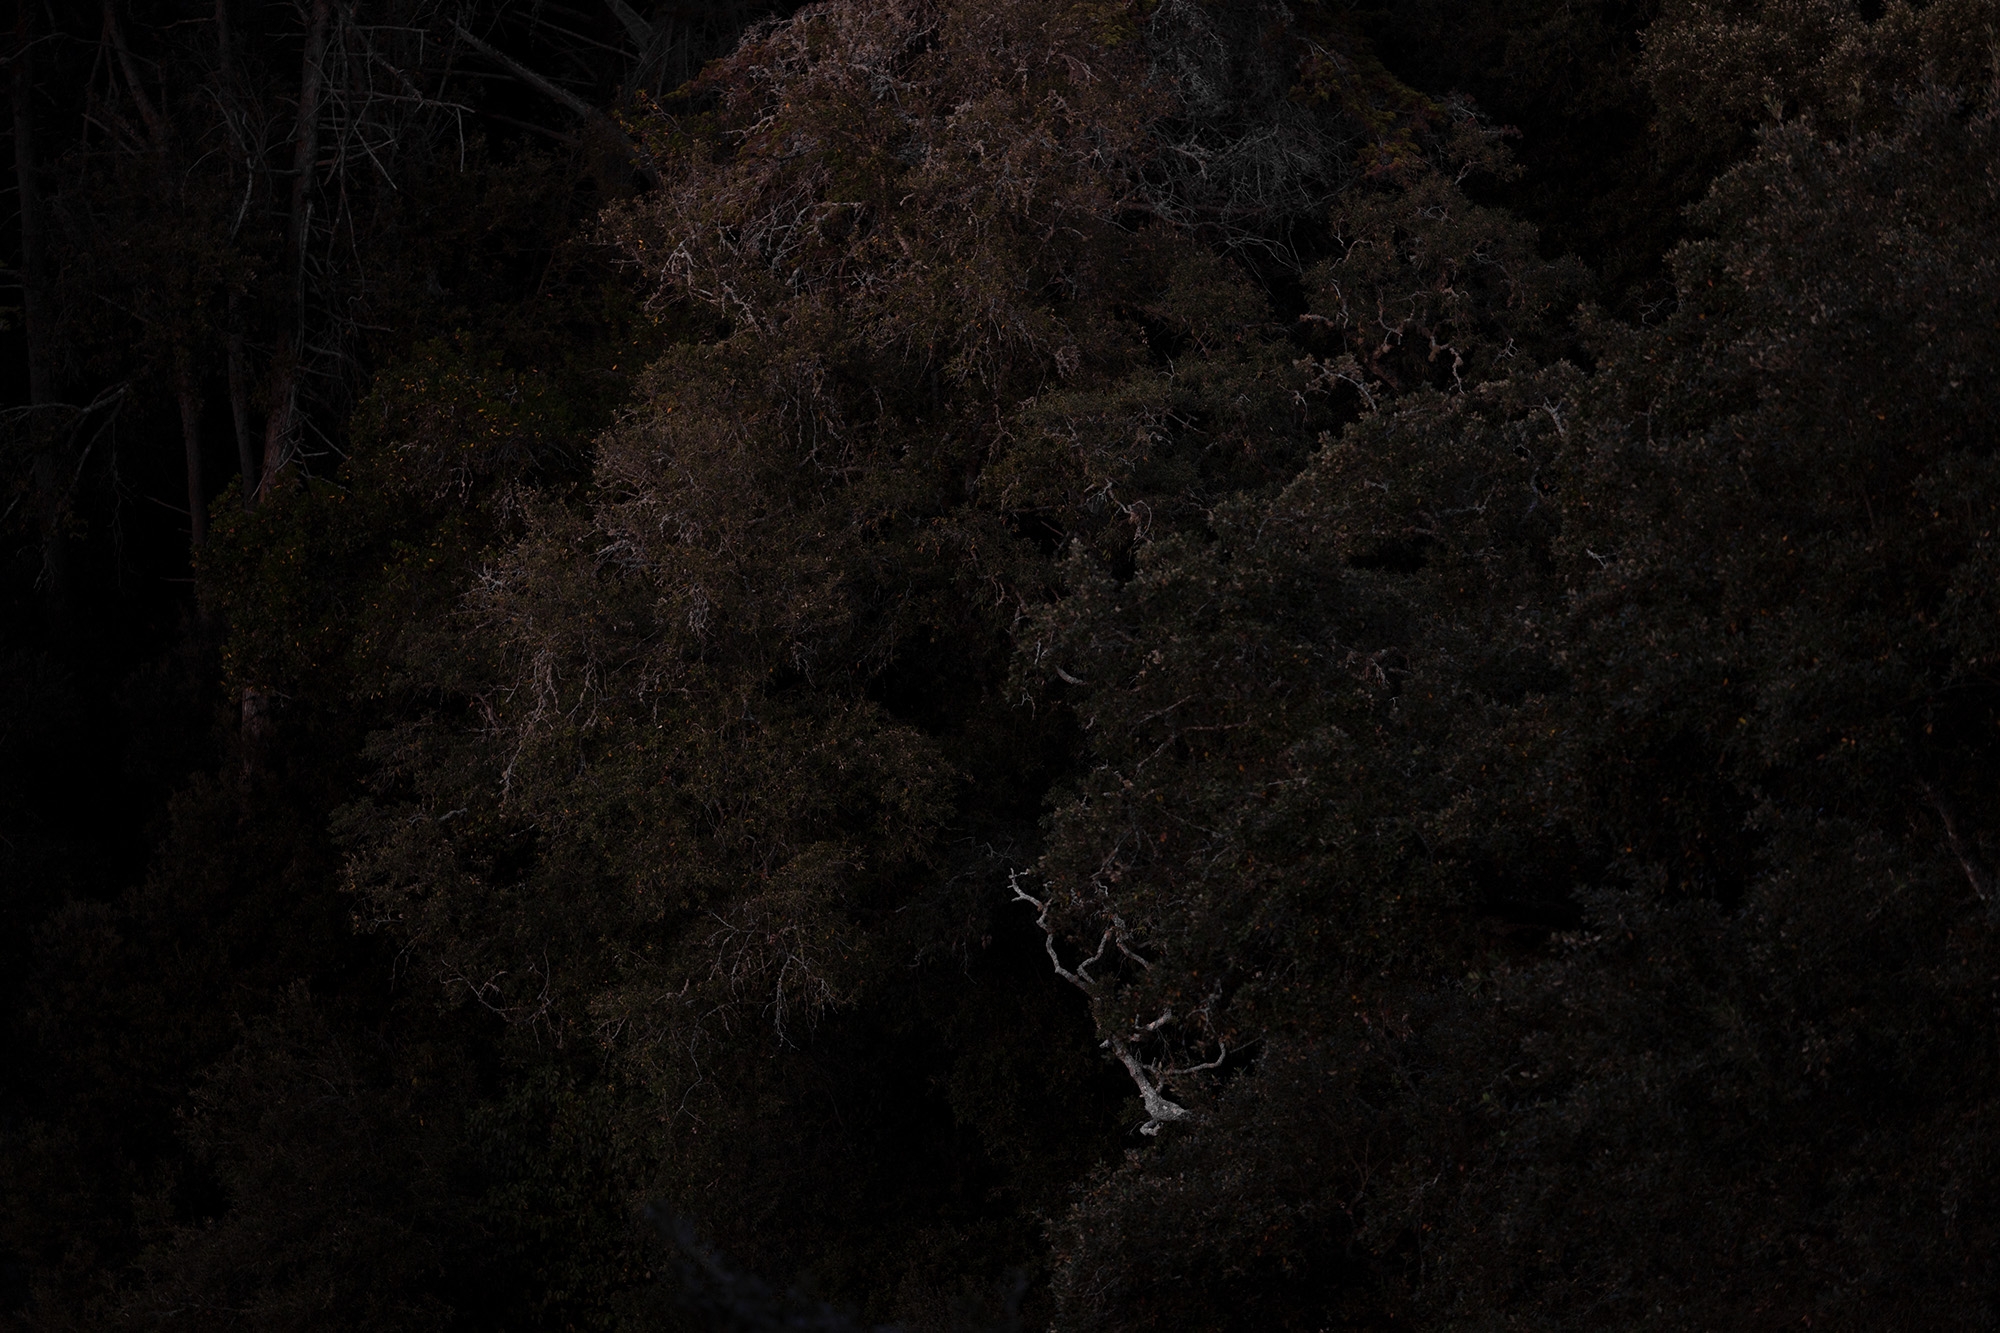 Carina Martins - Physis - detalhe de árvore à noite